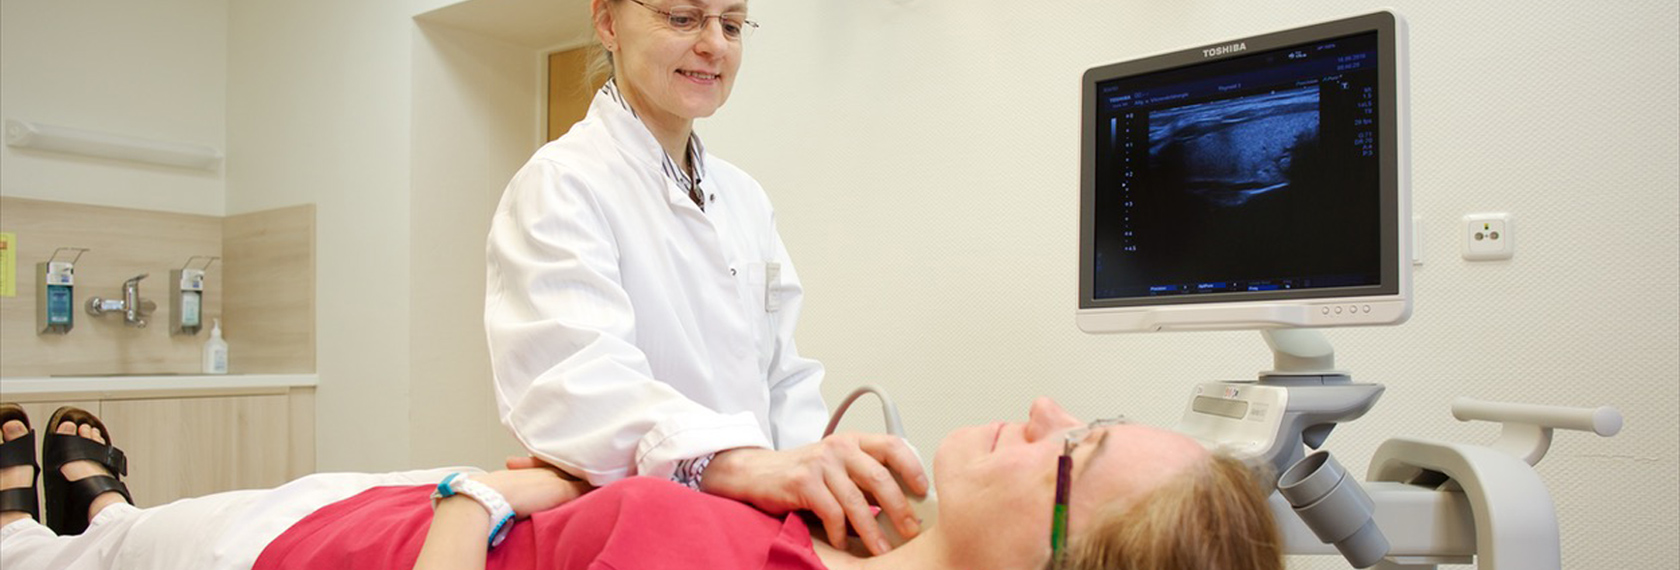 Ärztin untersucht die Schildrüse der Patientin mit einem Ultraschall